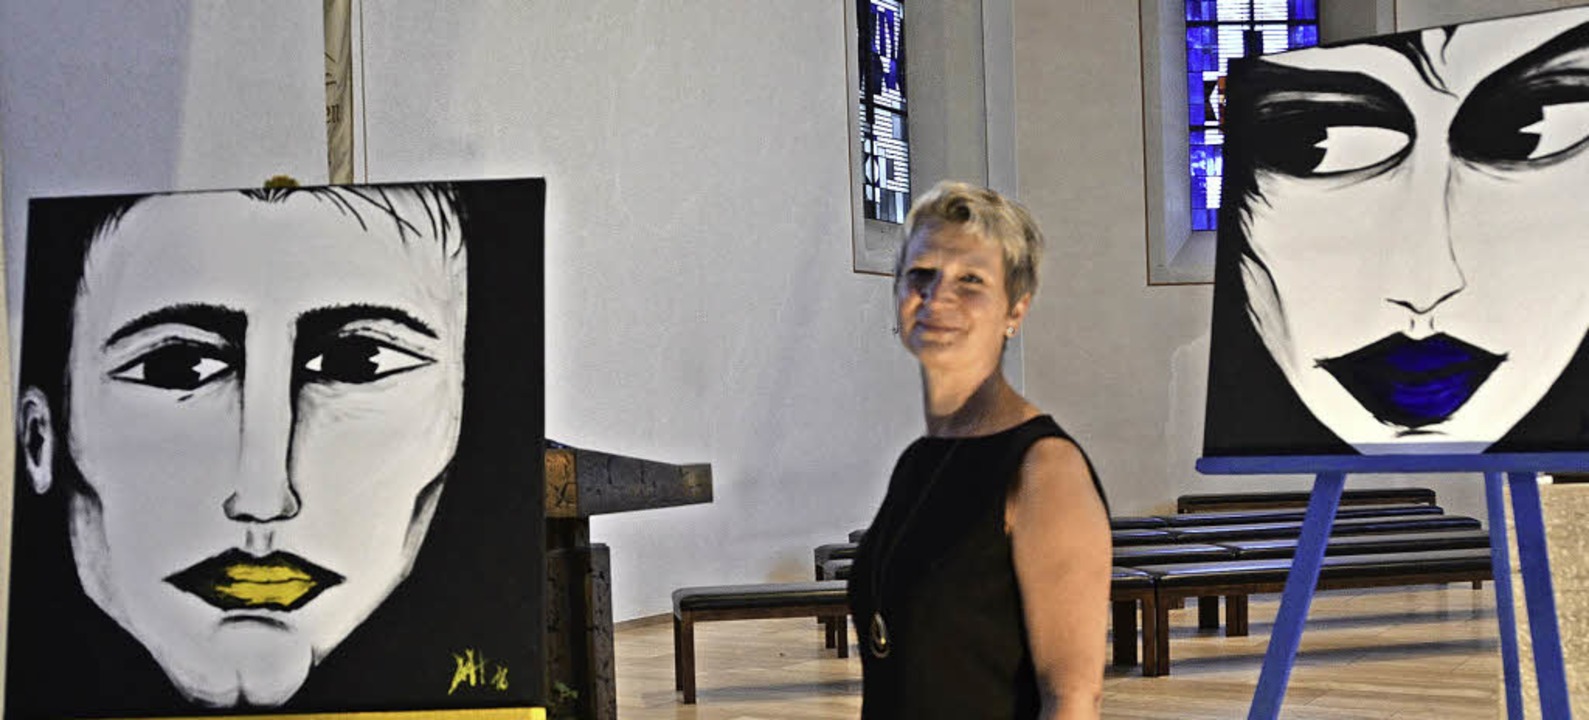 Martina Huber mit Ausstellungsstücken   | Foto: Hrvoje Miloslavic